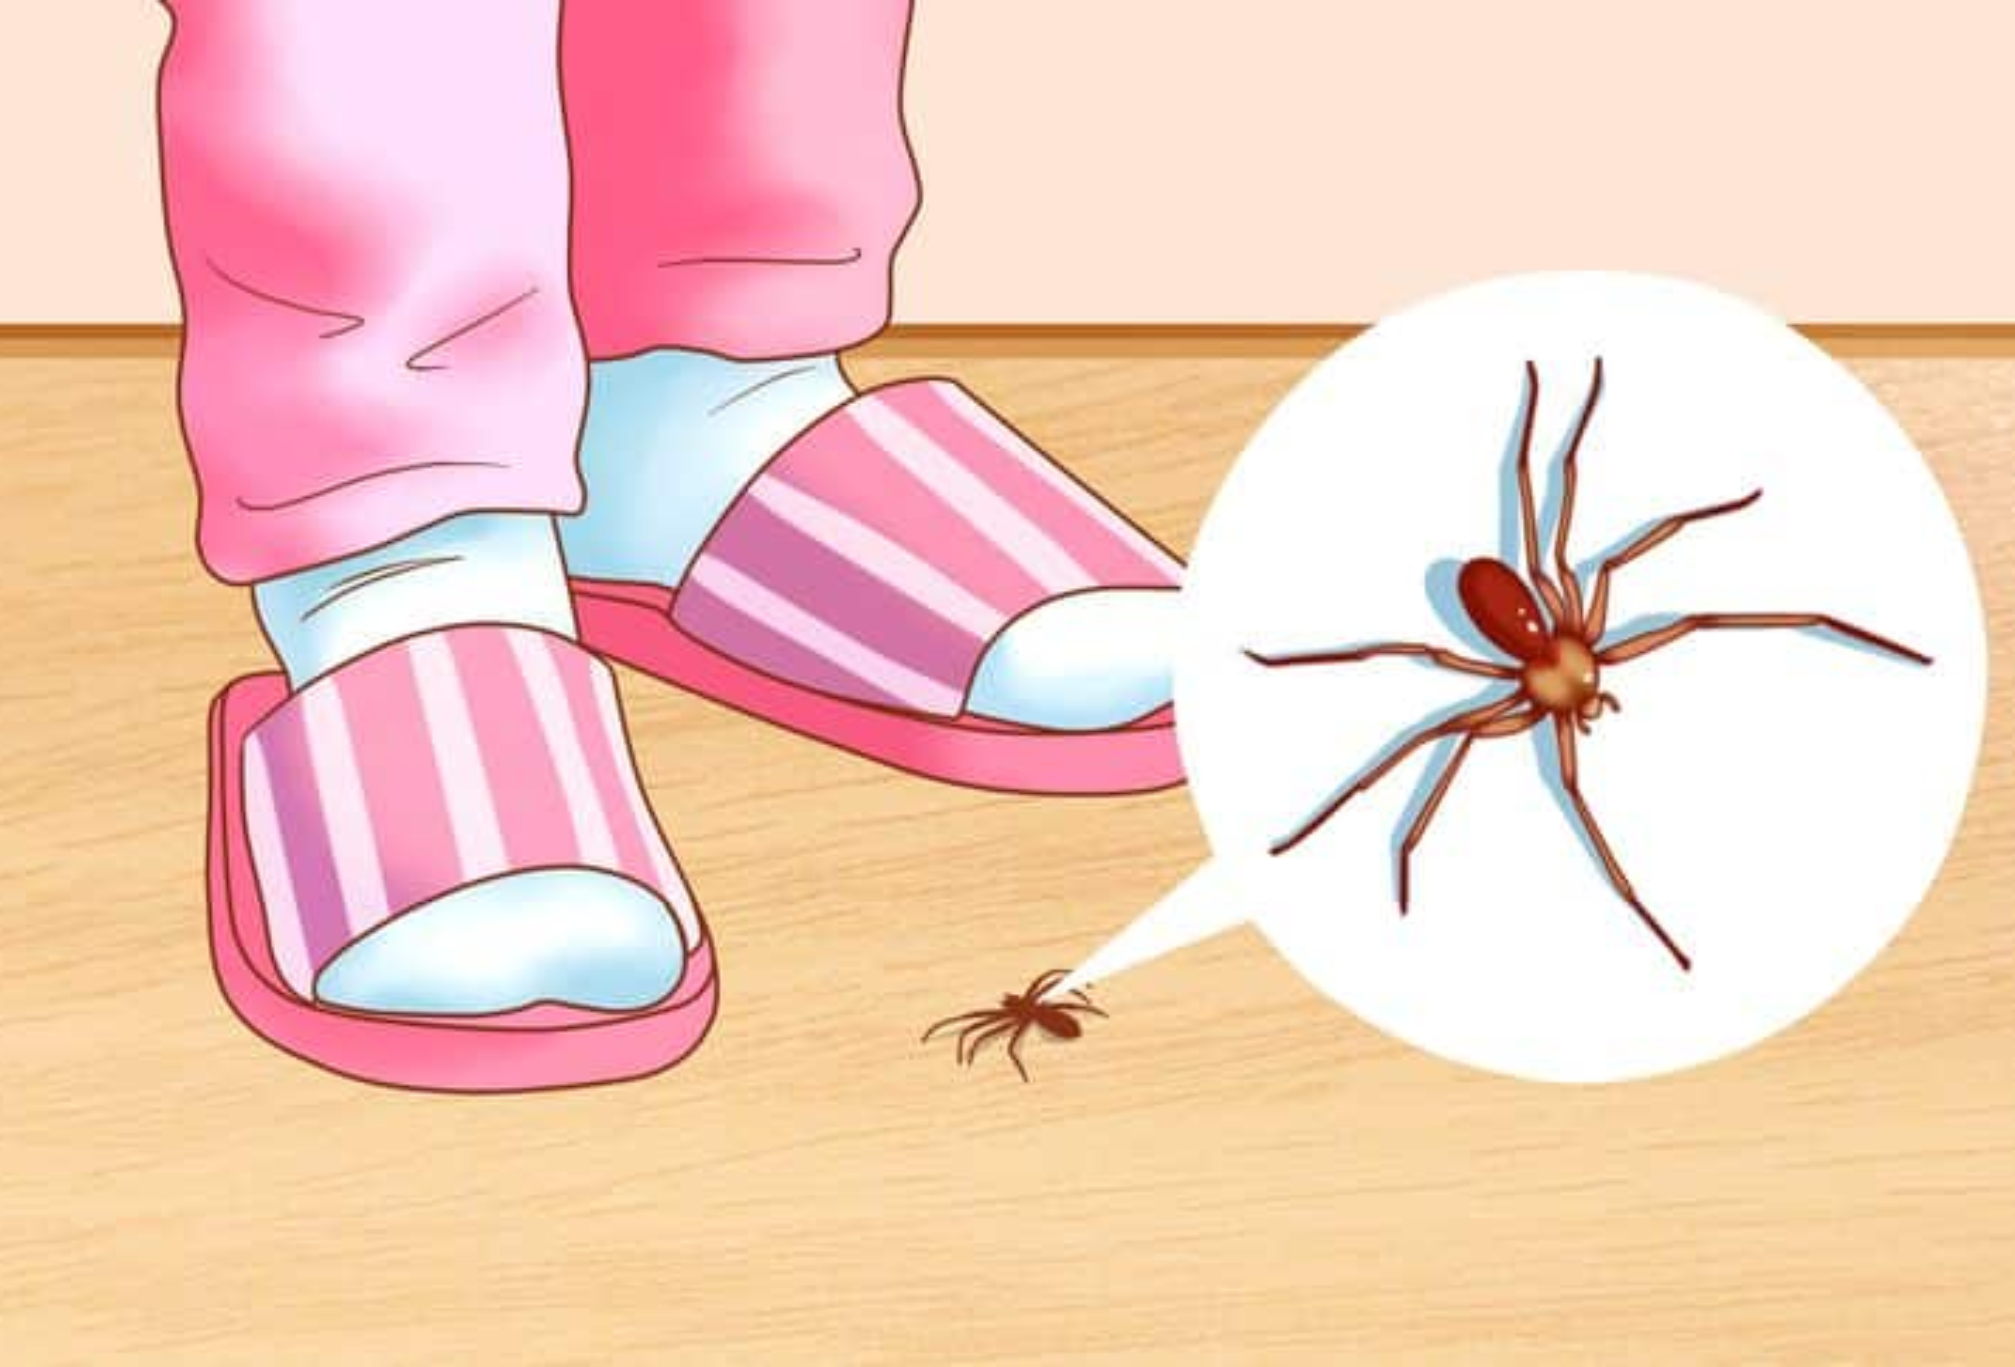 Αράχνες τσιμπούρια και κατσαρίδες στο σπίτι: 6 φυσικοί τρόποι για να απαλλαγείτε οριστικά